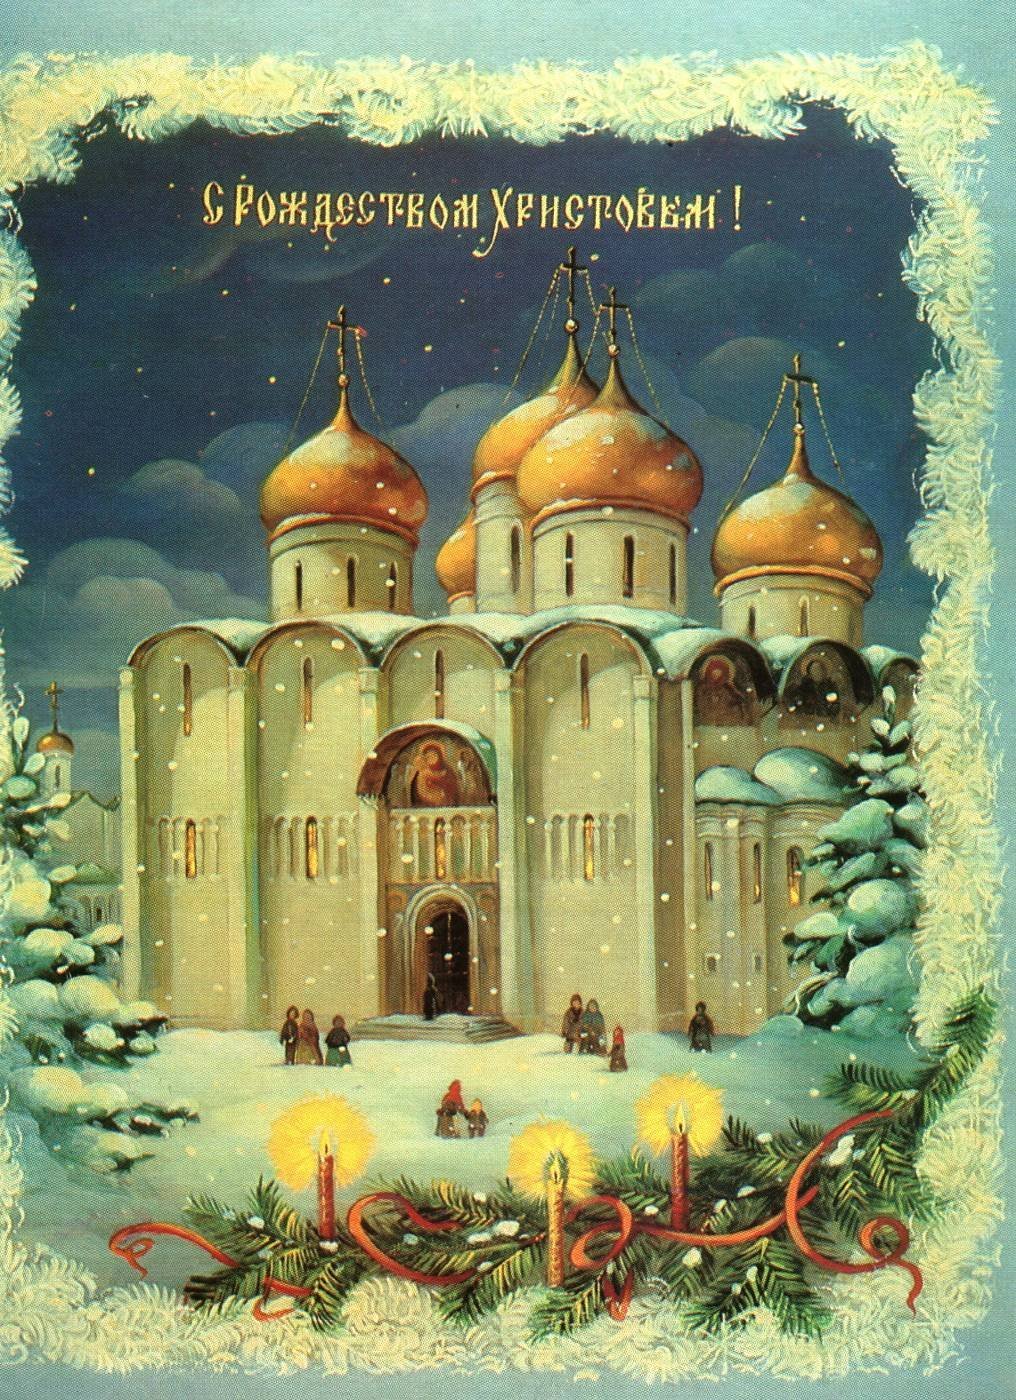 Сочельник открытки старинные русские